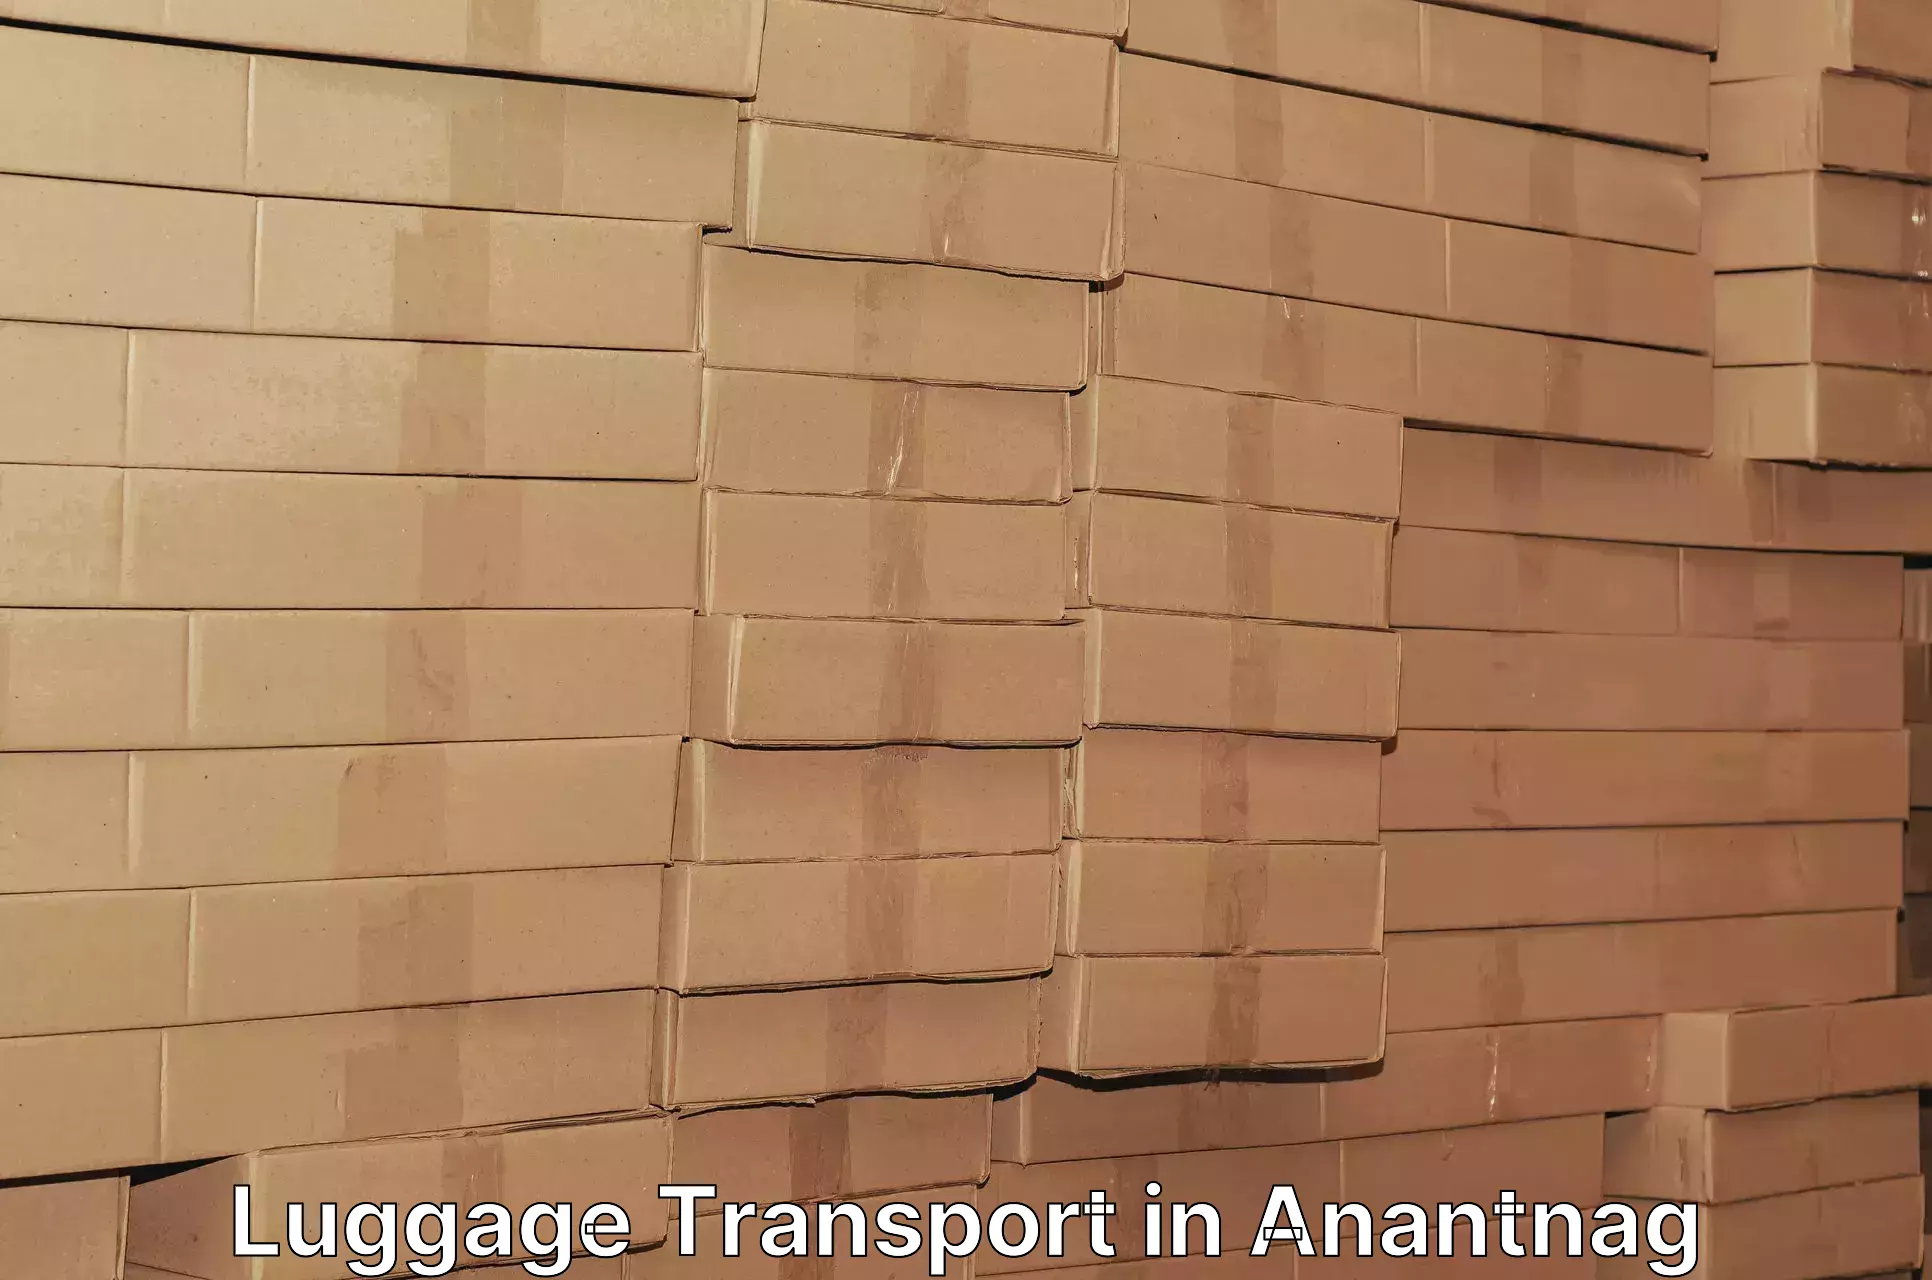 Luggage transit service in Anantnag